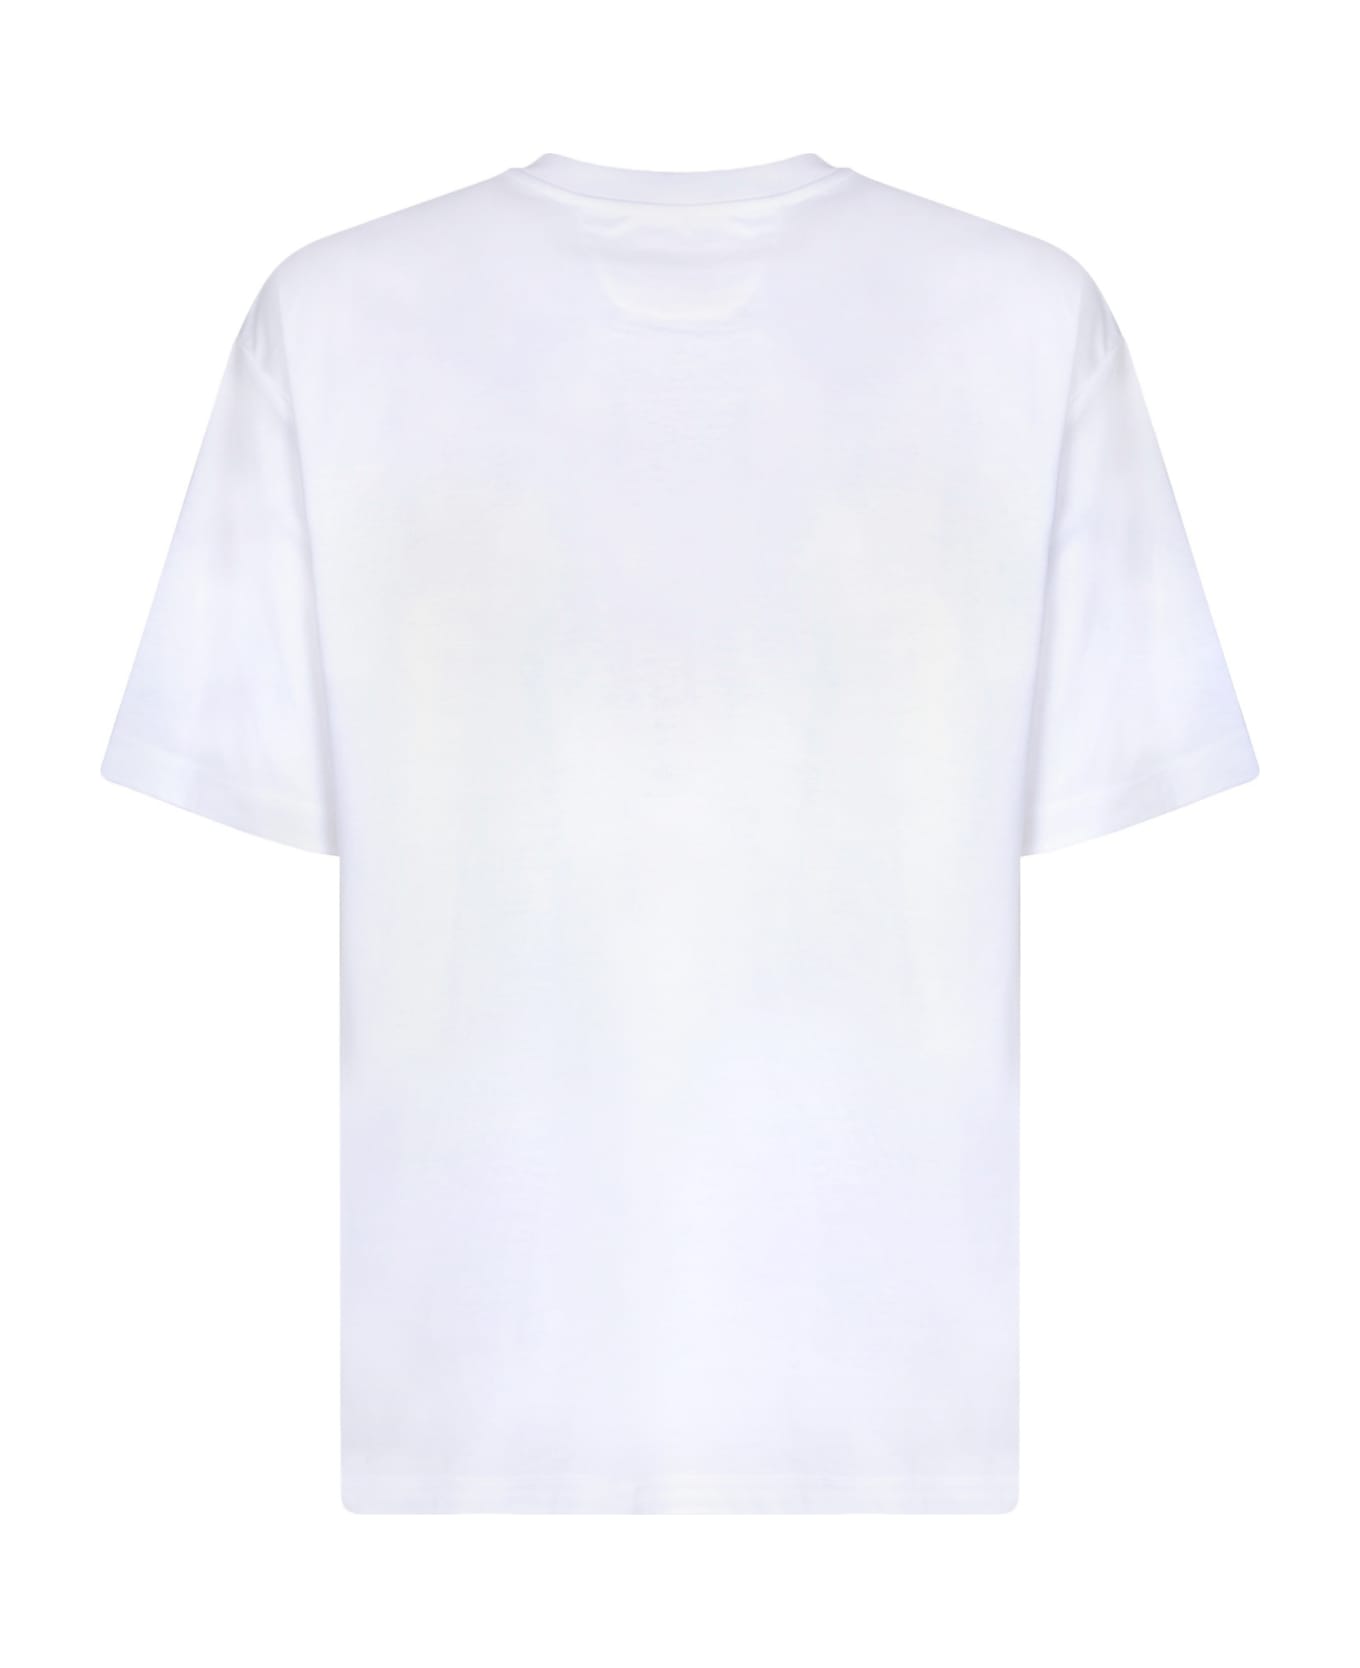 Ferrari Graffiti Logo White T-shirt - White